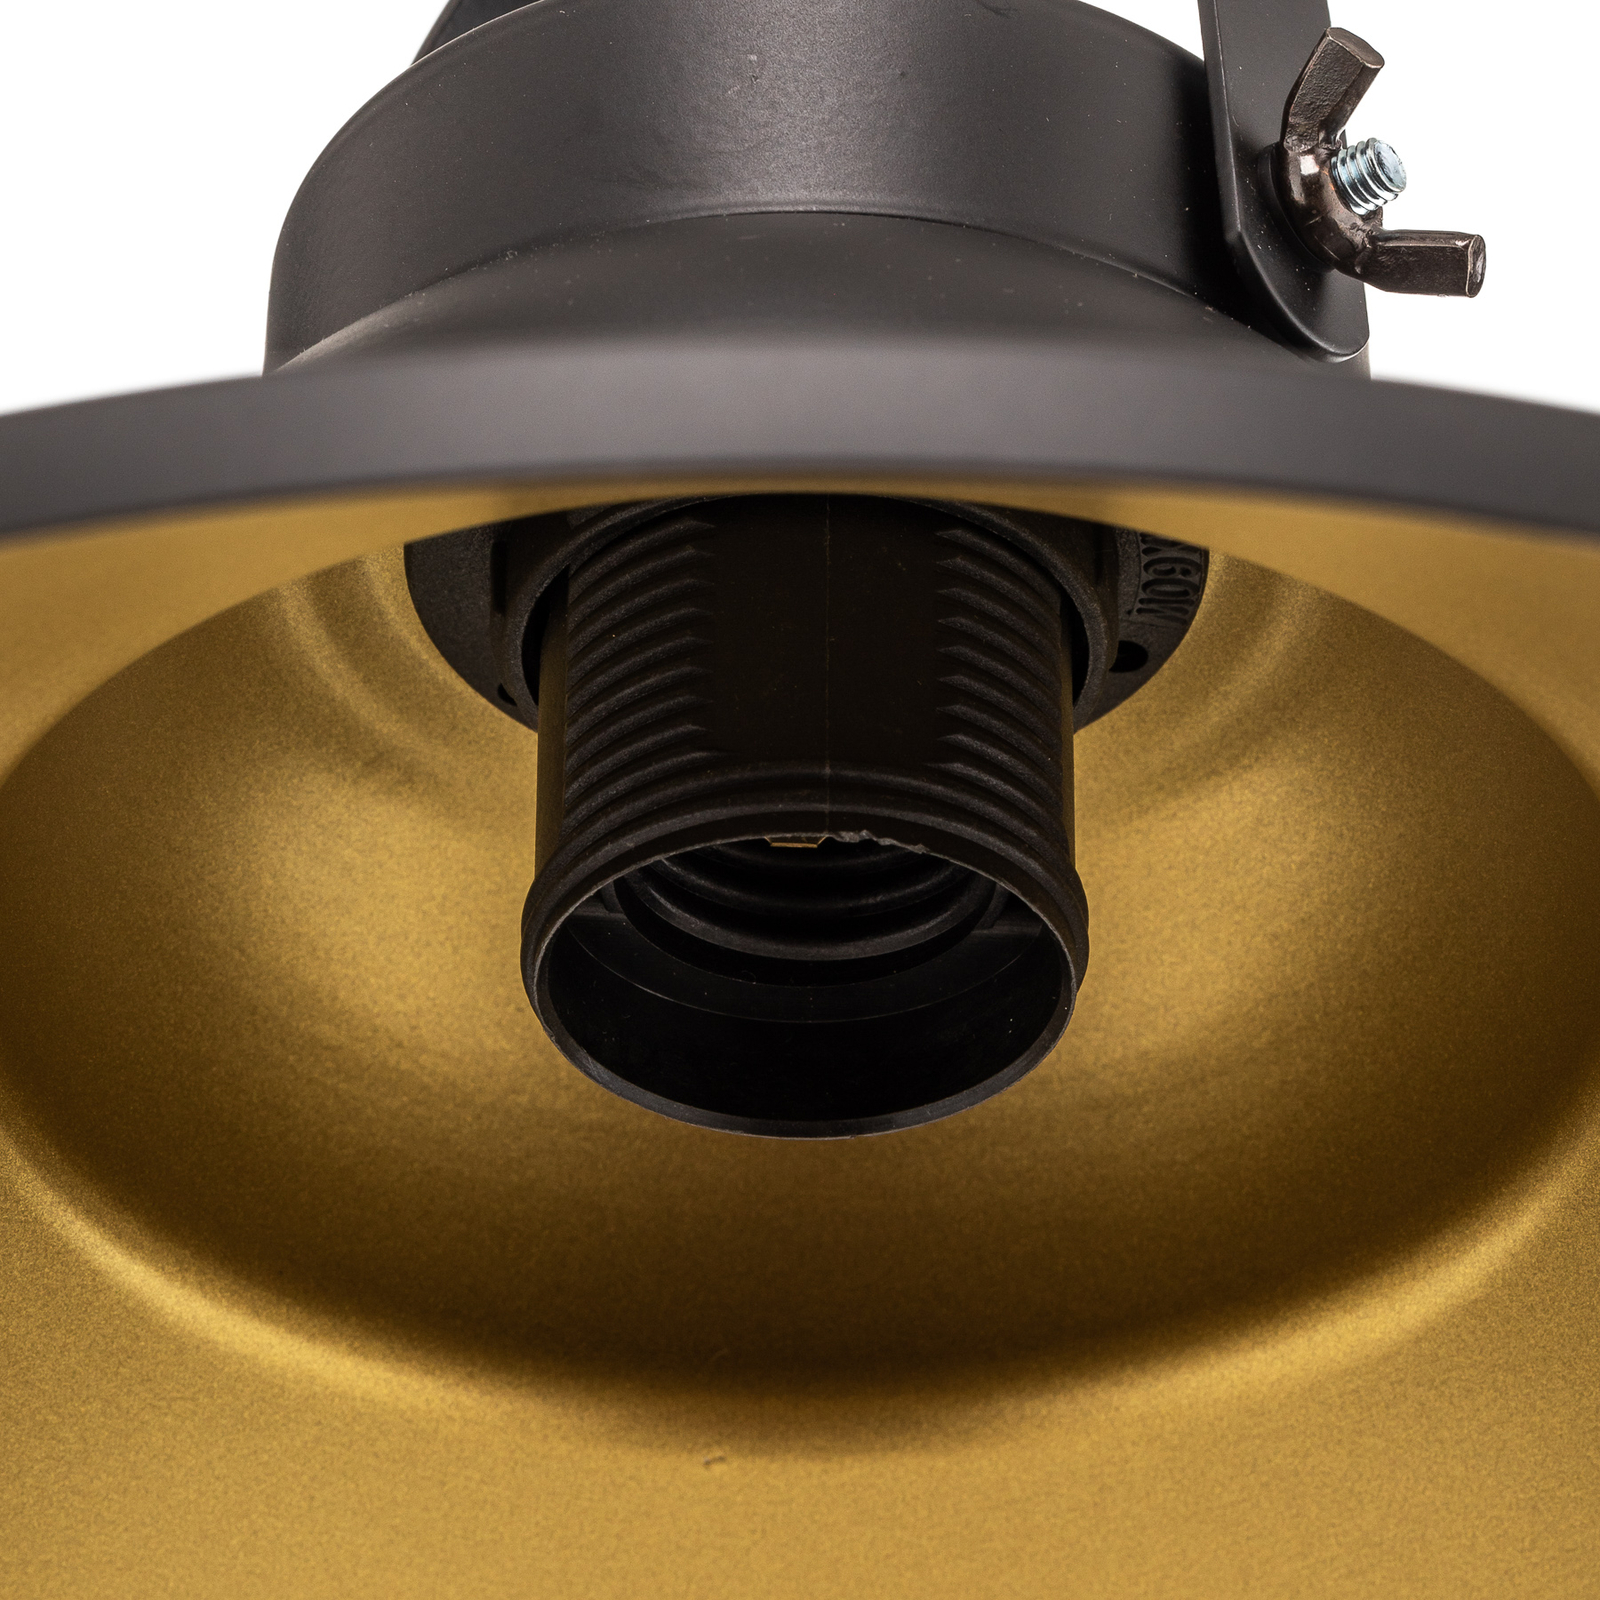 Lampa wisząca Taft z kloszem w kolorze czarnym i złotym